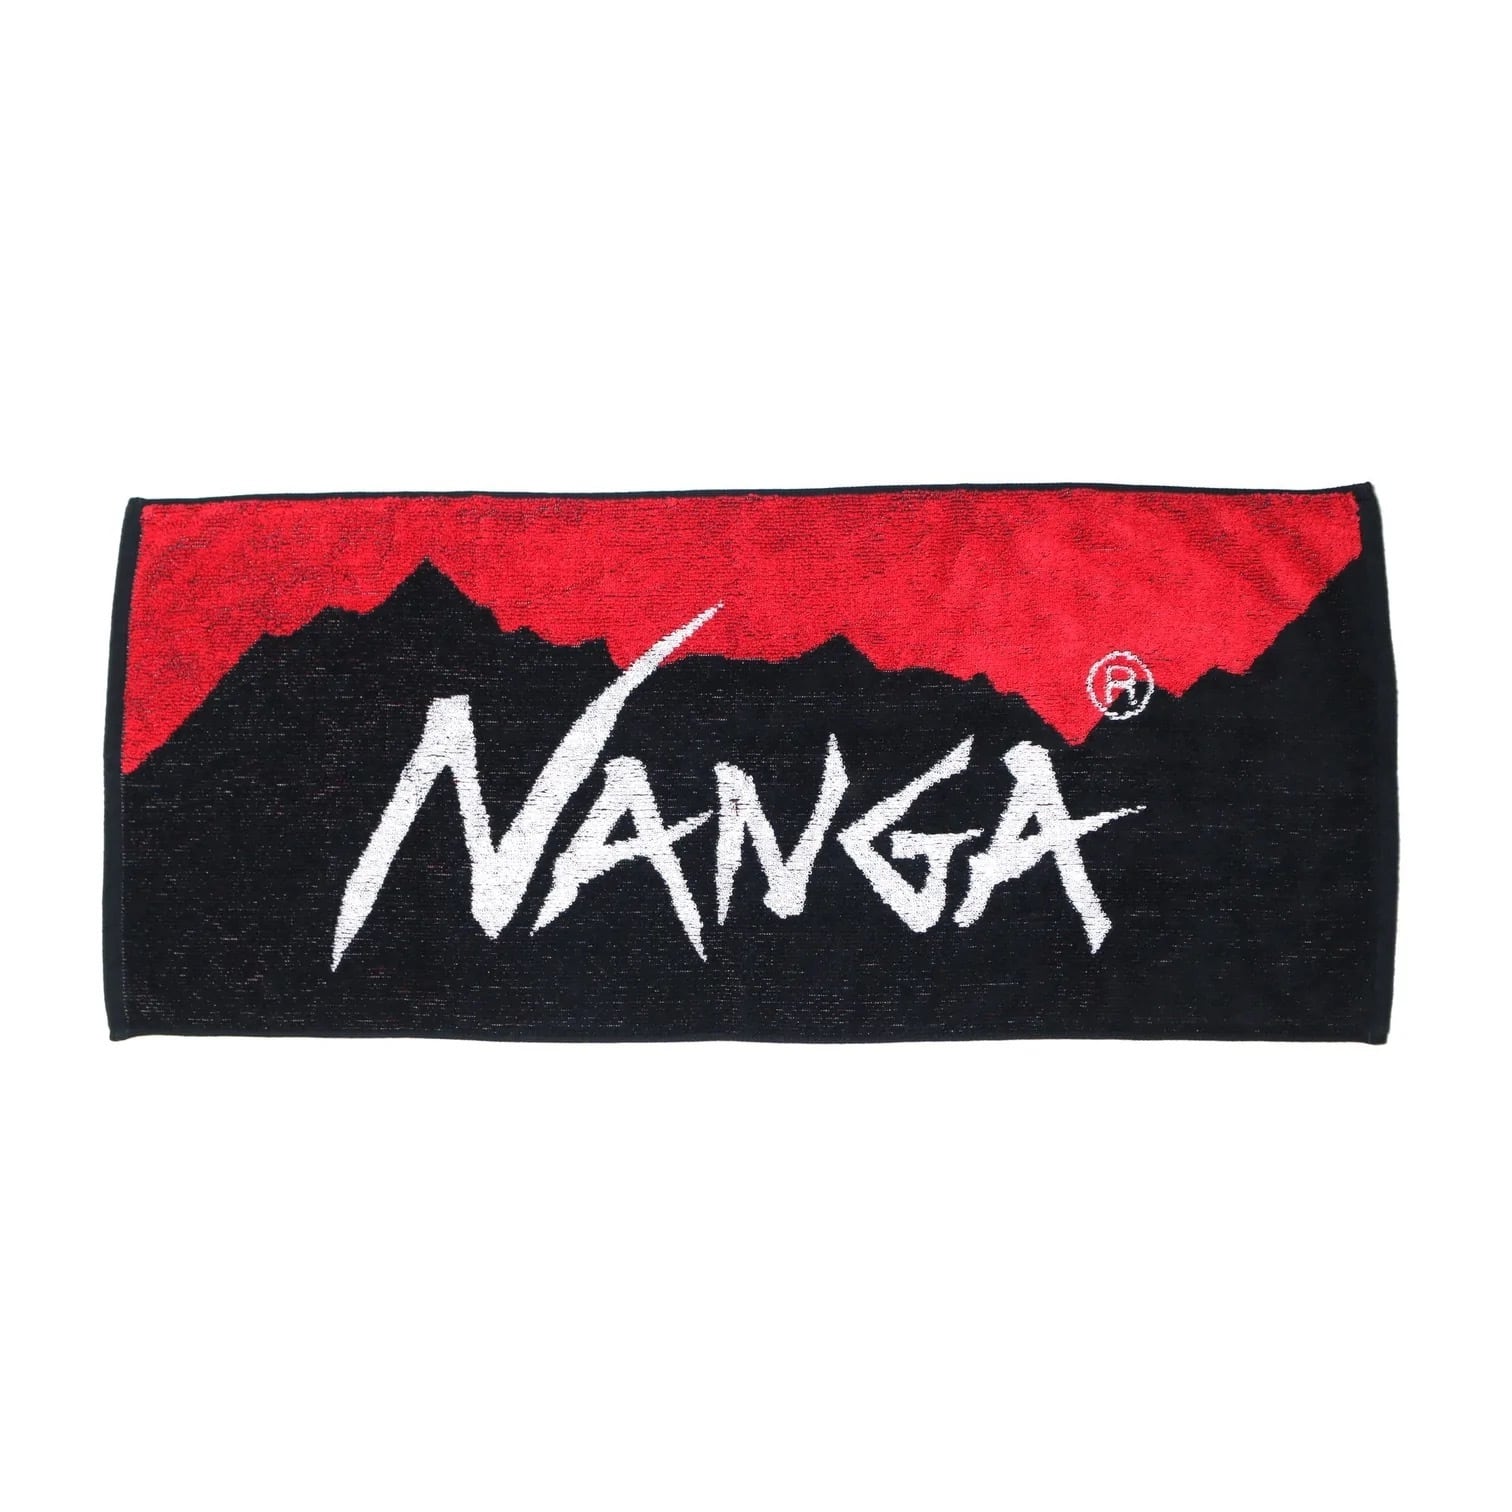 NANGA(ナンガ) NANGA LOGO FACE TOWEL / ナンガロゴフェイスタオル - RED×BLK